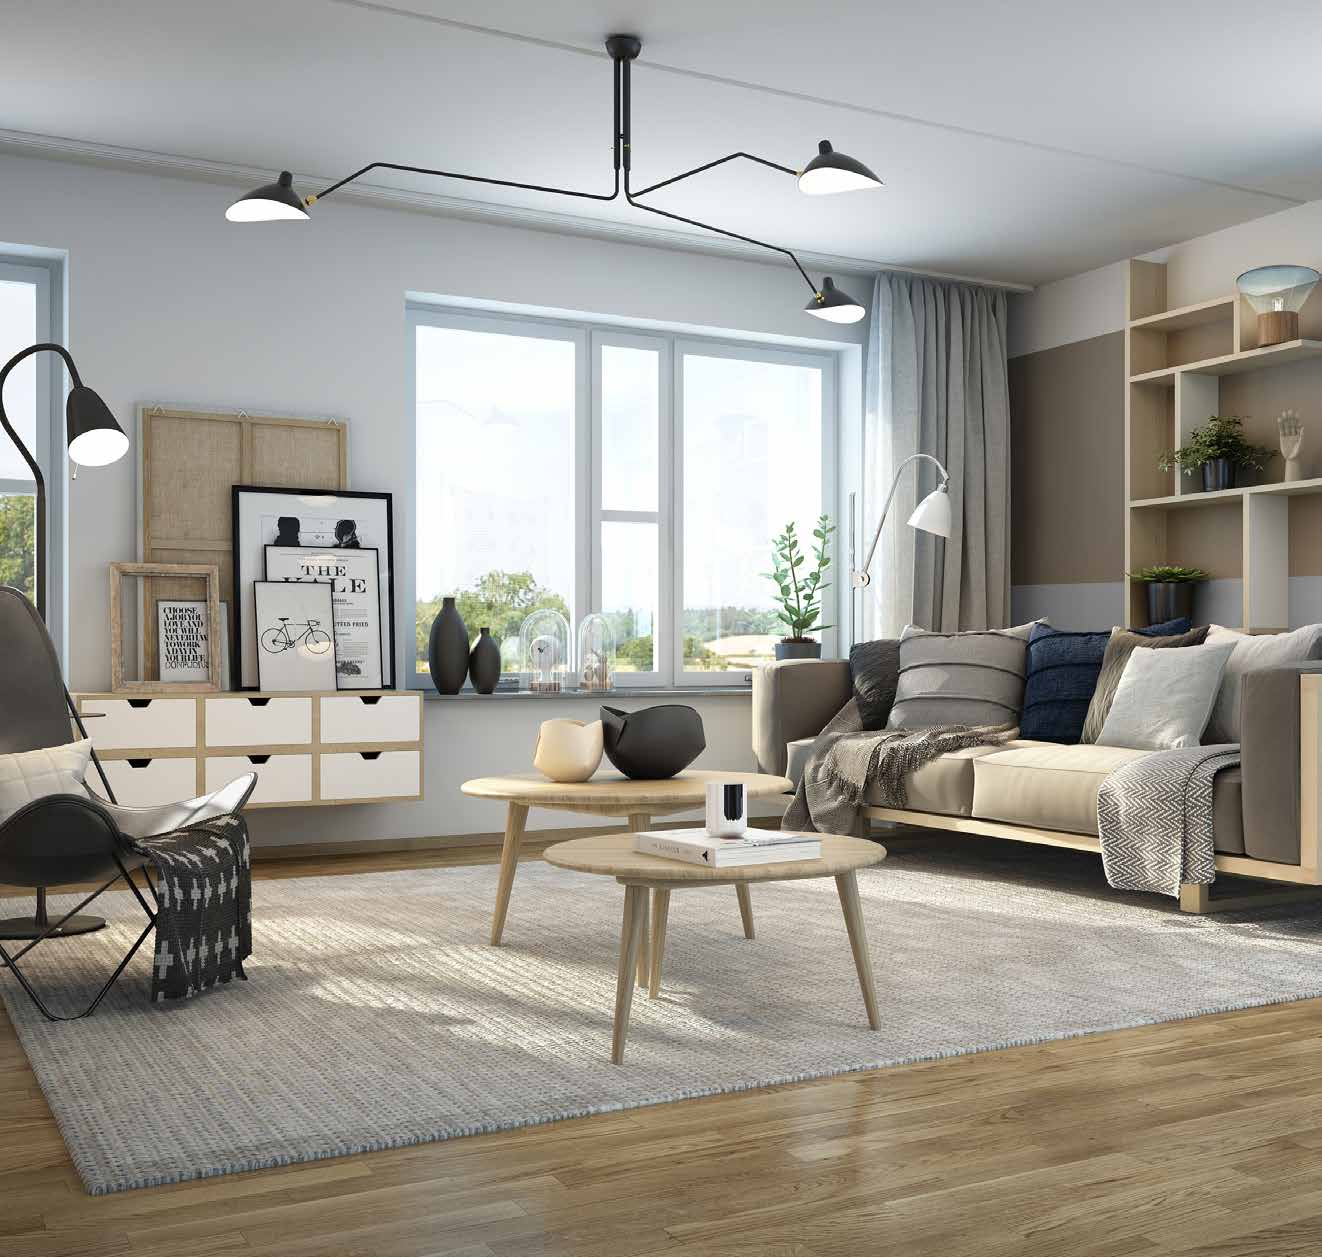 Å SKAPE ET HJEM JM Original sørger for at din nye bolig er preget av skandinavisk design, med tregulv og overflater som hovedsakelig består av naturmaterialer.